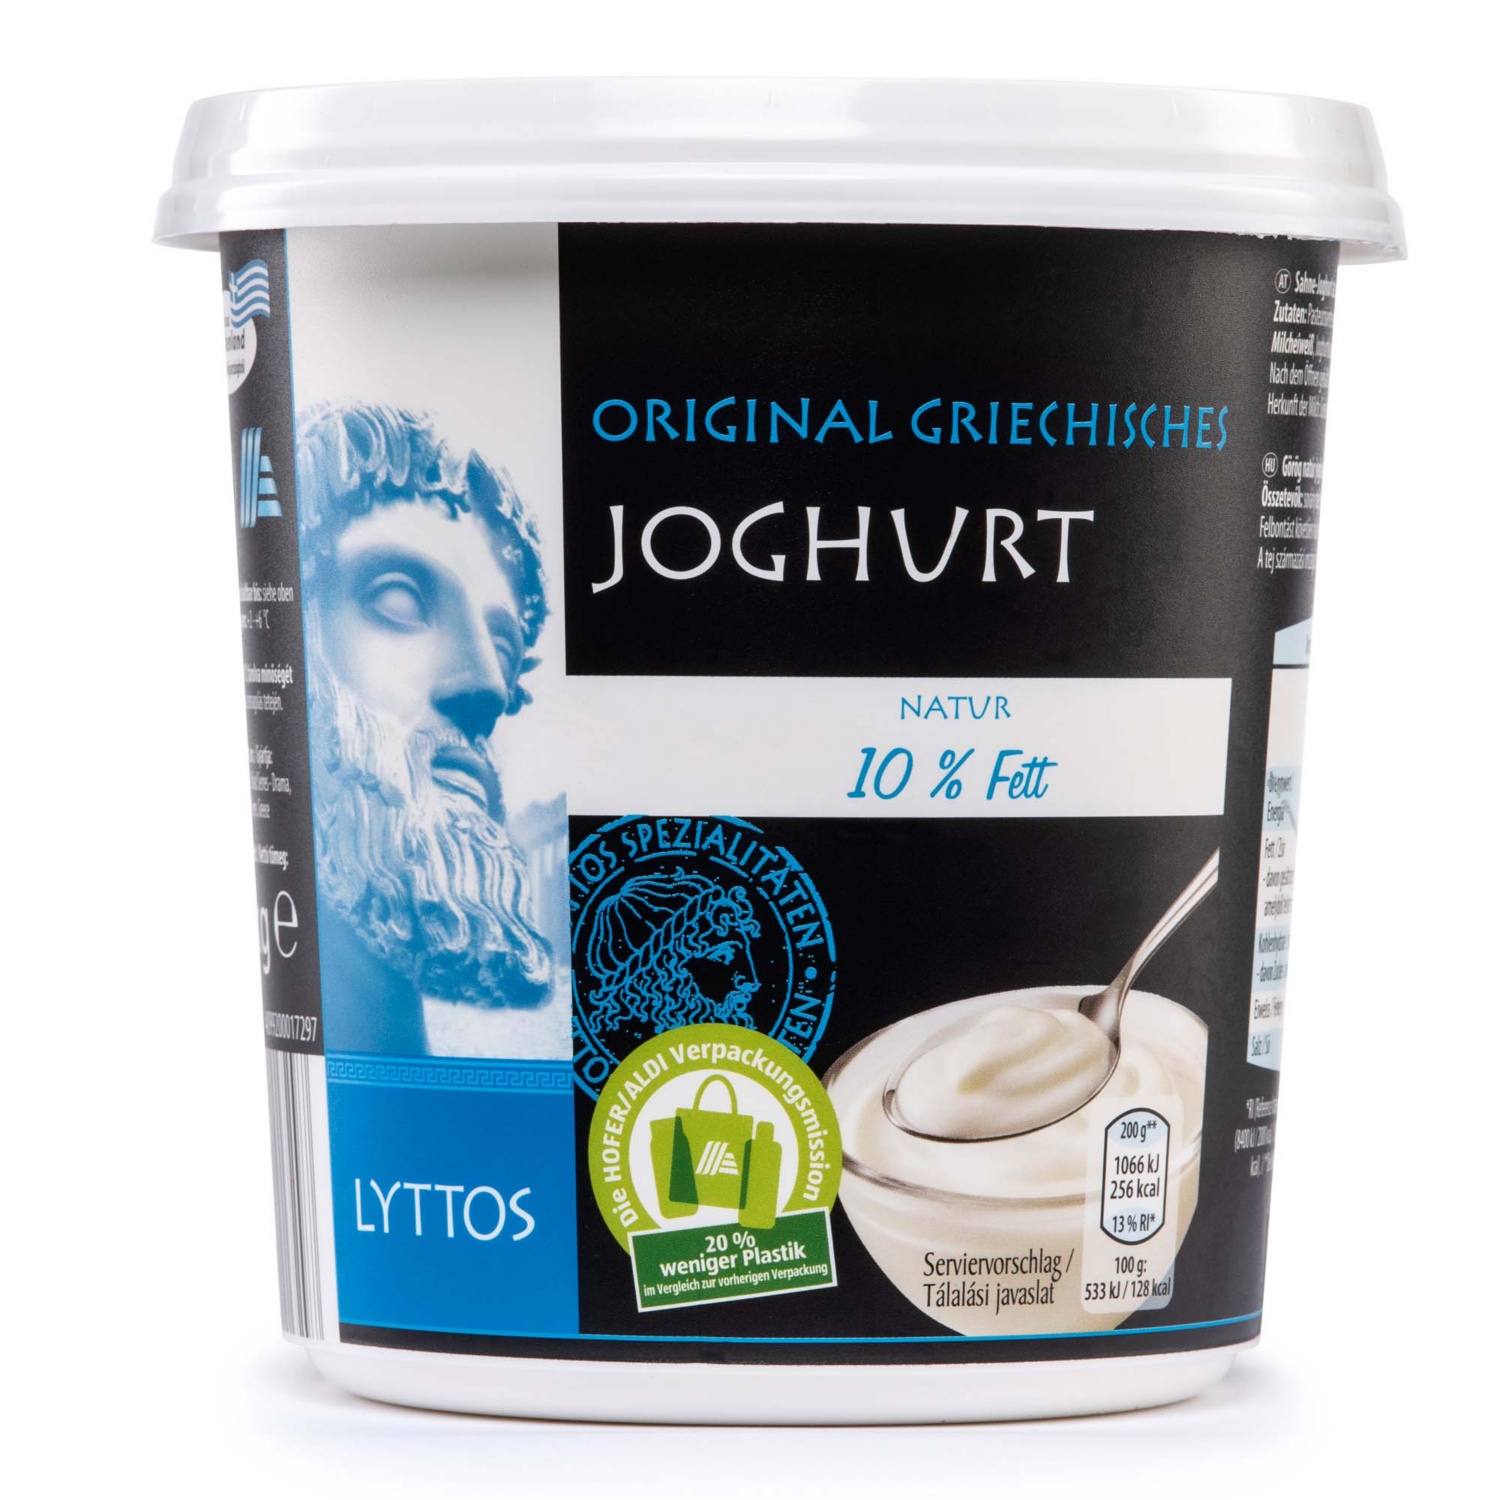 LYTTOS Görög natúr joghurt, 10 % zsírtartalom, 1 kg